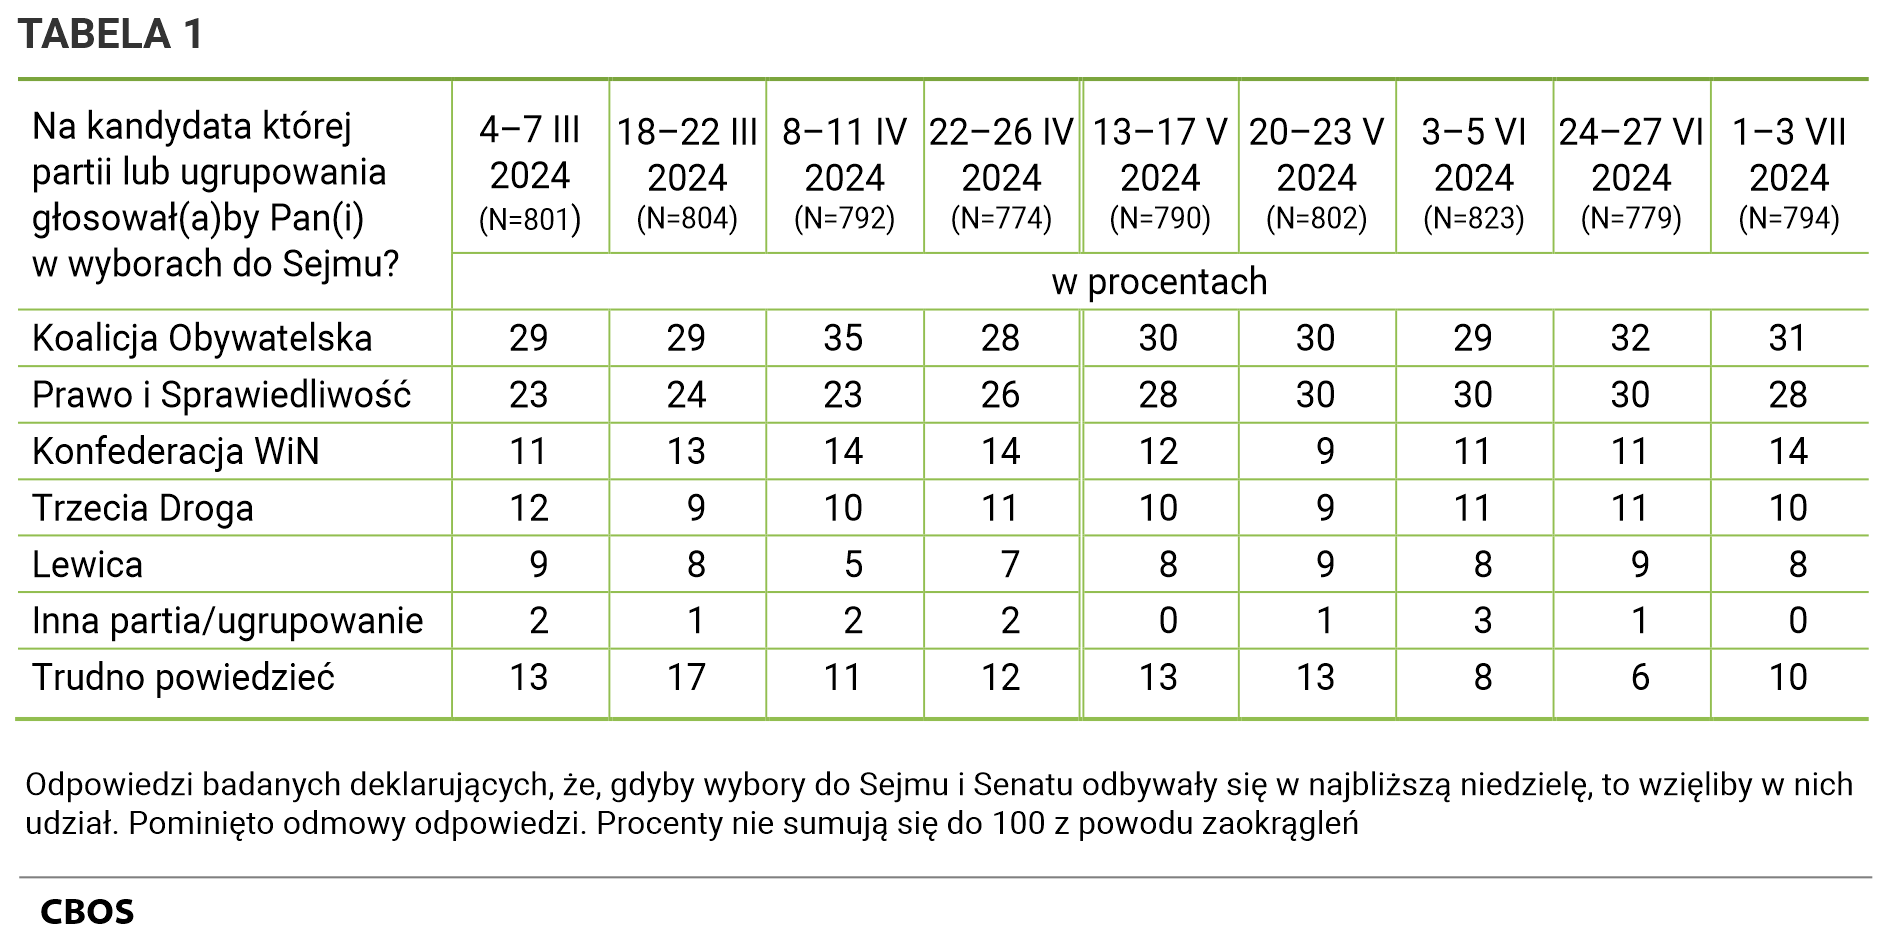 Tabela 1 Na kandydata której partii lub ugrupowania głosowałby Pan (głosowałaby Pani) w wyborach do Sejmu? Odpowiedzi według terminów badań badanych deklarujących, że gdyby wybory do Sejmu i Senatu odbywały się w najbliższą niedzielę, to wzięliby w nich udział. Na kandydata której partii lub ugrupowania głosował(a)by Pan(i) w wyborach do Sejmu? - 4–7 marca  2024 (N=801), Koalicja Obywatelska - 29%, Prawo i Sprawiedliwość - 23%, Konfederacja WiN - 11%, Trzecia Droga - 12%, Lewica - 9%, Inna partia/ugrupowanie - 2%, Trudno powiedzieć - 13%  18–22 marca 2024 (N=804), Koalicja Obywatelska - 29%, Prawo i Sprawiedliwość - 24%, Konfederacja WiN - 13%, Trzecia Droga - 9%, Lewica - 8%, Inna partia/ugrupowanie - 1%, Trudno powiedzieć - 17%.  8–11 kwietnia 2024 (N=792), Koalicja Obywatelska - 35%, Prawo i Sprawiedliwość - 23%, Konfederacja WiN - 14%, Trzecia Droga - 10%, Lewica - 5%, Inna partia/ugrupowanie - 2%, Trudno powiedzieć - 11%.  22–26 kwietnia 2024 (N=774), Koalicja Obywatelska - 28%, Prawo i Sprawiedliwość - 26%, Konfederacja WiN - 14%, Trzecia Droga - 11%, Lewica - 7%, Inna partia/ugrupowanie - 2%, Trudno powiedzieć - 12%  13–17 maja 2024 (N=790), Koalicja Obywatelska - 30%, Prawo i Sprawiedliwość - 28%, Konfederacja WiN - 12%, Trzecia Droga - 10%, Lewica - 8%, Inna partia/ugrupowanie - 0%, Trudno powiedzieć - 13%  20–23 maja 2024 (N=802), Koalicja Obywatelska - 30%, Prawo i Sprawiedliwość - 30%, Konfederacja WiN - 9%, Trzecia Droga - 9%, Lewica - 9%, Inna partia/ugrupowanie - 1%, Trudno powiedzieć - 13%.  3–5 czerwca 2024 (N=823), Koalicja Obywatelska - 29%, Prawo i Sprawiedliwość - 30%, Konfederacja WiN - 11%, Trzecia Droga - 11%, Lewica - 8%, Inna partia/ugrupowanie - 3%, Trudno powiedzieć - 8%  24–27 czerwca  2024 (N=779), Koalicja Obywatelska - 32%, Prawo i Sprawiedliwość - 30%, Konfederacja WiN - 11%, Trzecia Droga - 11%, Lewica - 9%, Inna partia/ugrupowanie - 1%, Trudno powiedzieć - 6%  1–3 lipca2024 (N=794), Koalicja Obywatelska - 31%, Prawo i Sprawiedliwość - 28%, Konfederacja WiN - 14%, Trzecia Droga - 10%, Lewica - 8%, Inna partia/ugrupowanie - 0%, Trudno powiedzieć - 10%. Pominięto odmowy odpowiedzi. Procenty nie sumują się do 100 z powodu zaokrągleń